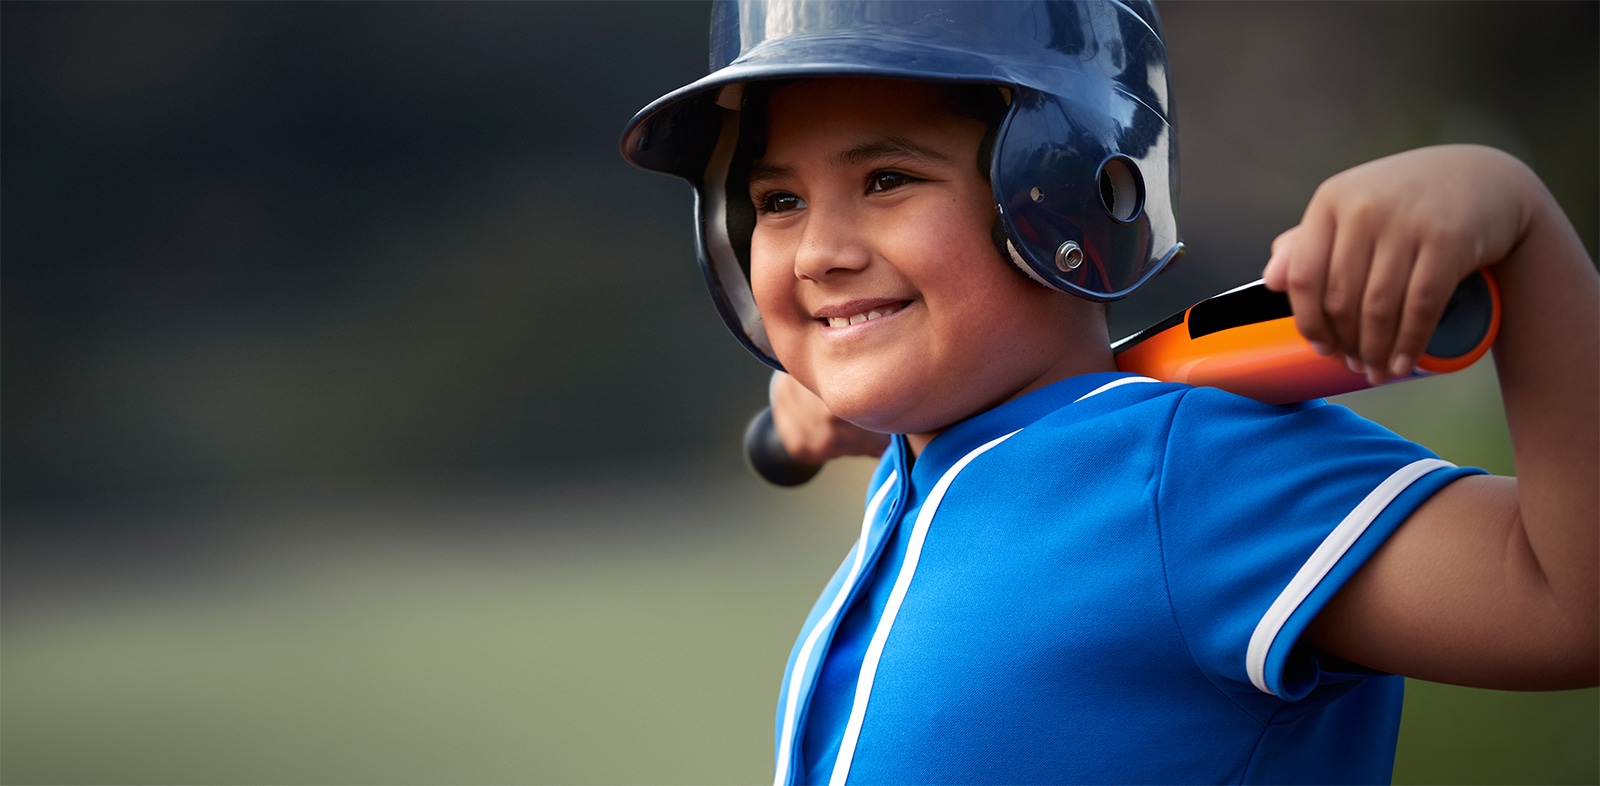 Boy in baseball uniform